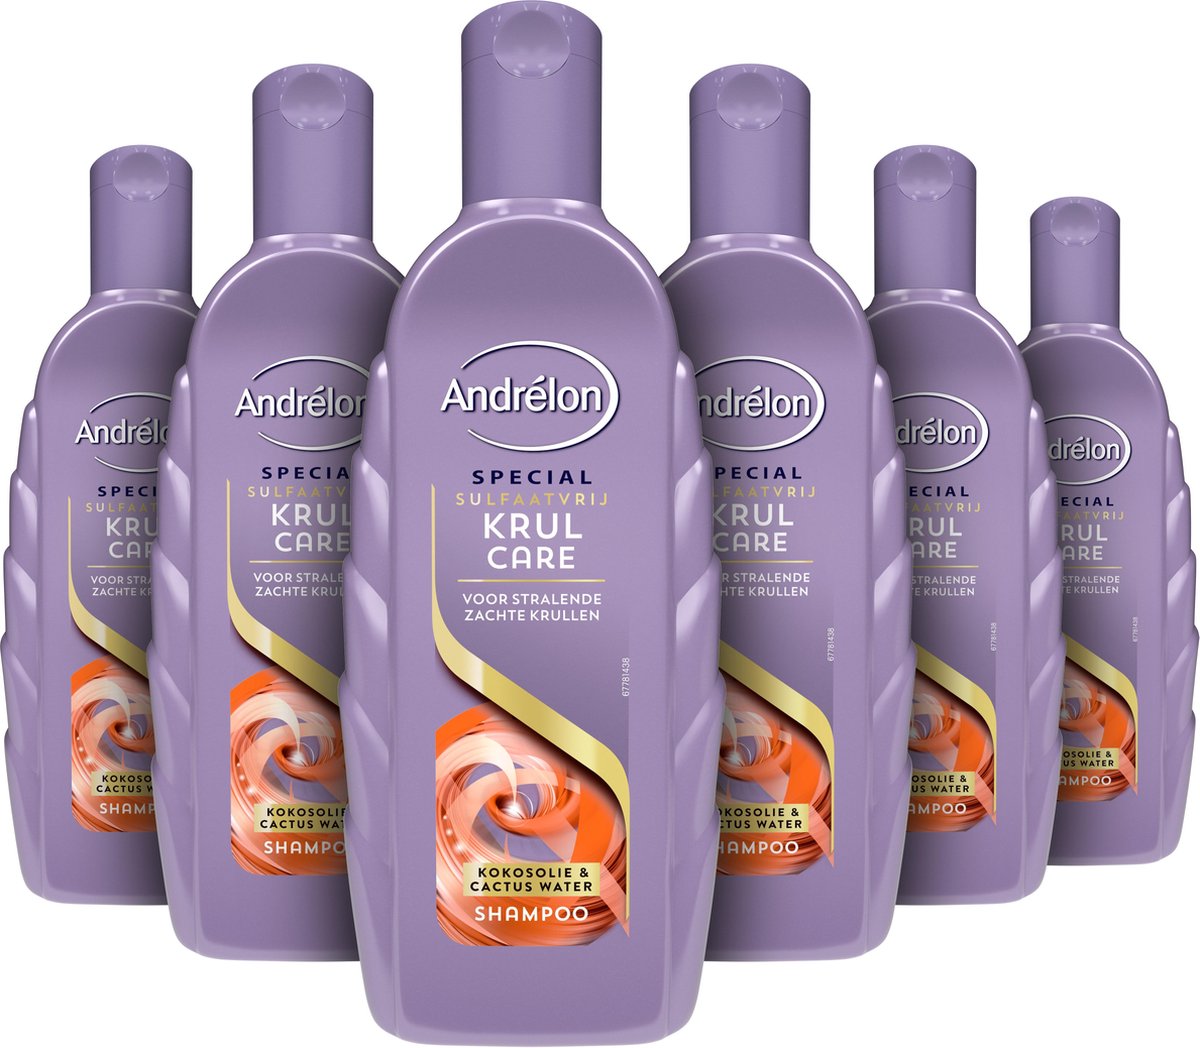 Andrélon Special Colour & Care Sulfaatvrij Shampoo - 6 x 300 ml -  Voordeelverpakking | bol